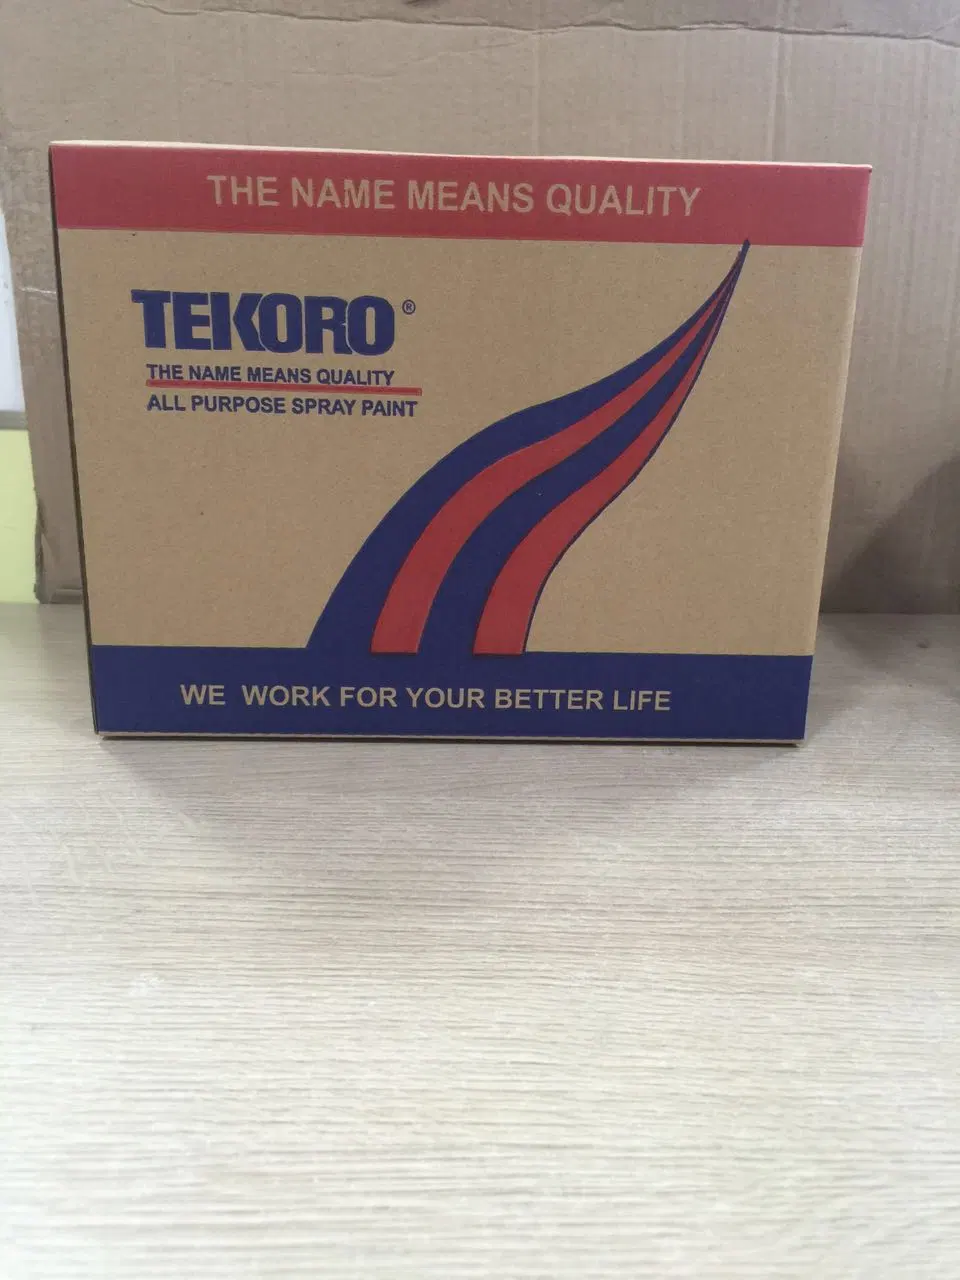 Хорошее качество Tekoro все цели Chrome Glod например флуоресцентные аэрозольные акриловые цвет аэрозольная краска для дерева и стекла/CAR/стены/МЕТАЛЛА